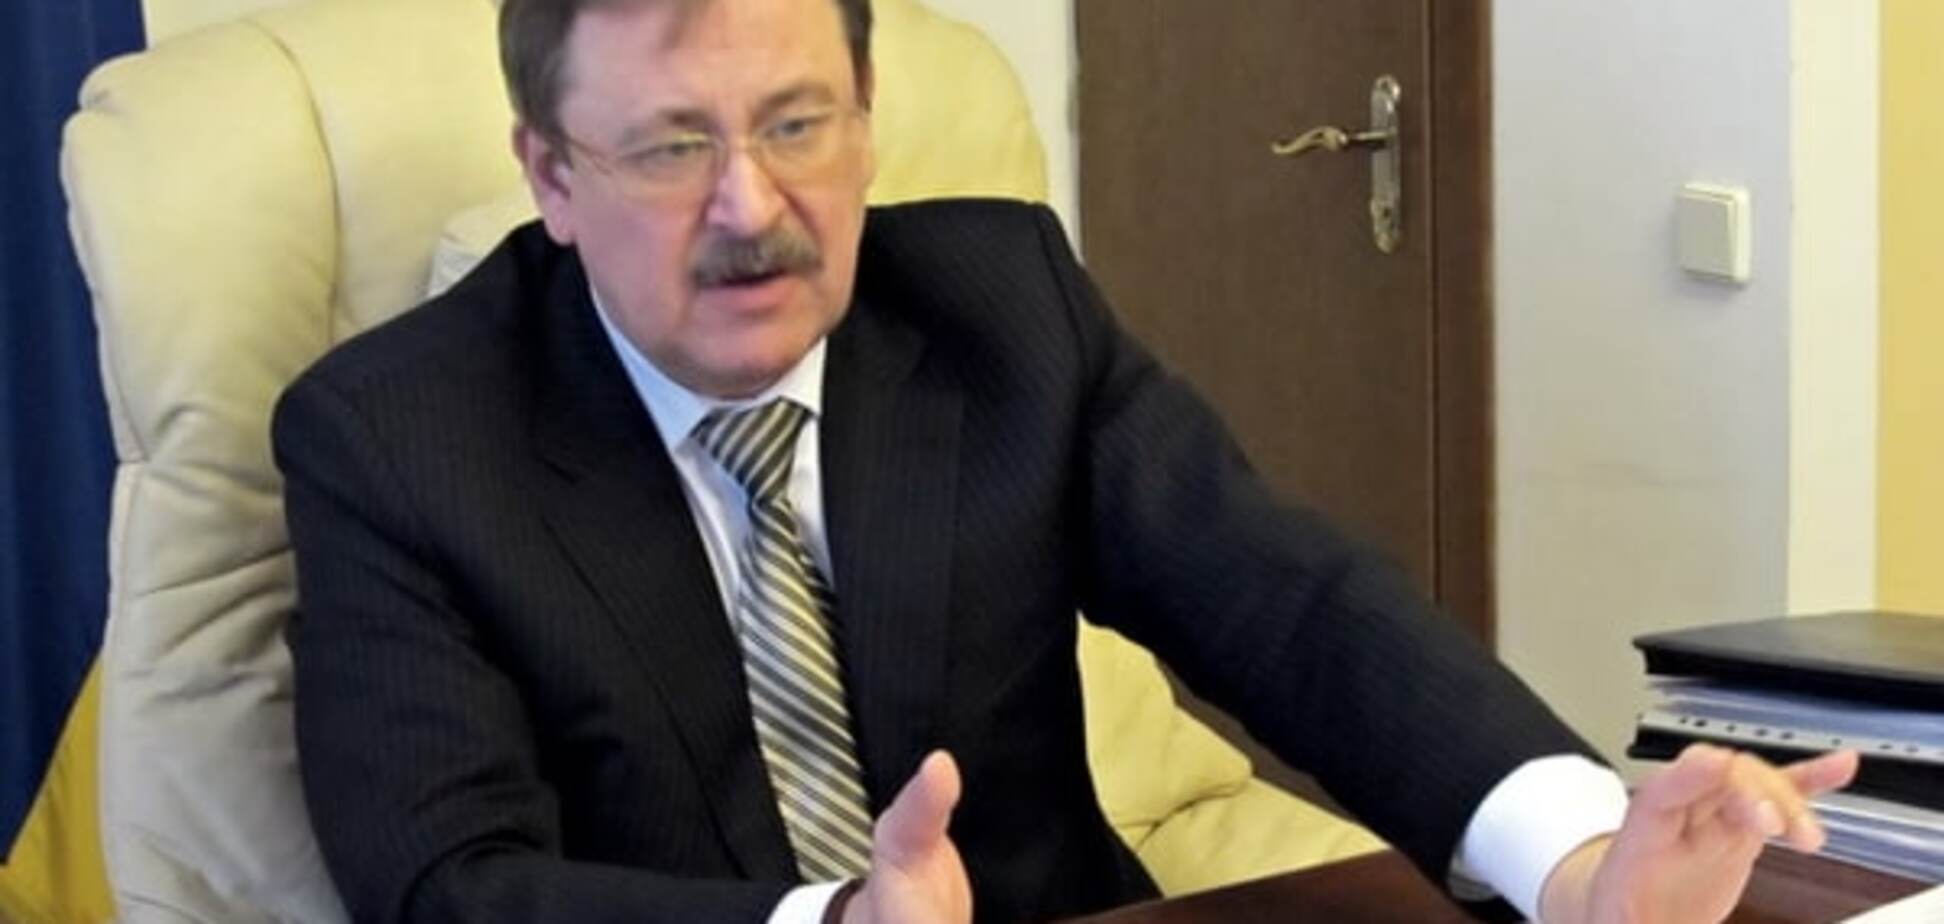 Екс-заступник міністра України перейшов на сторону 'ДНР' і працює заступником у терориста Хромого